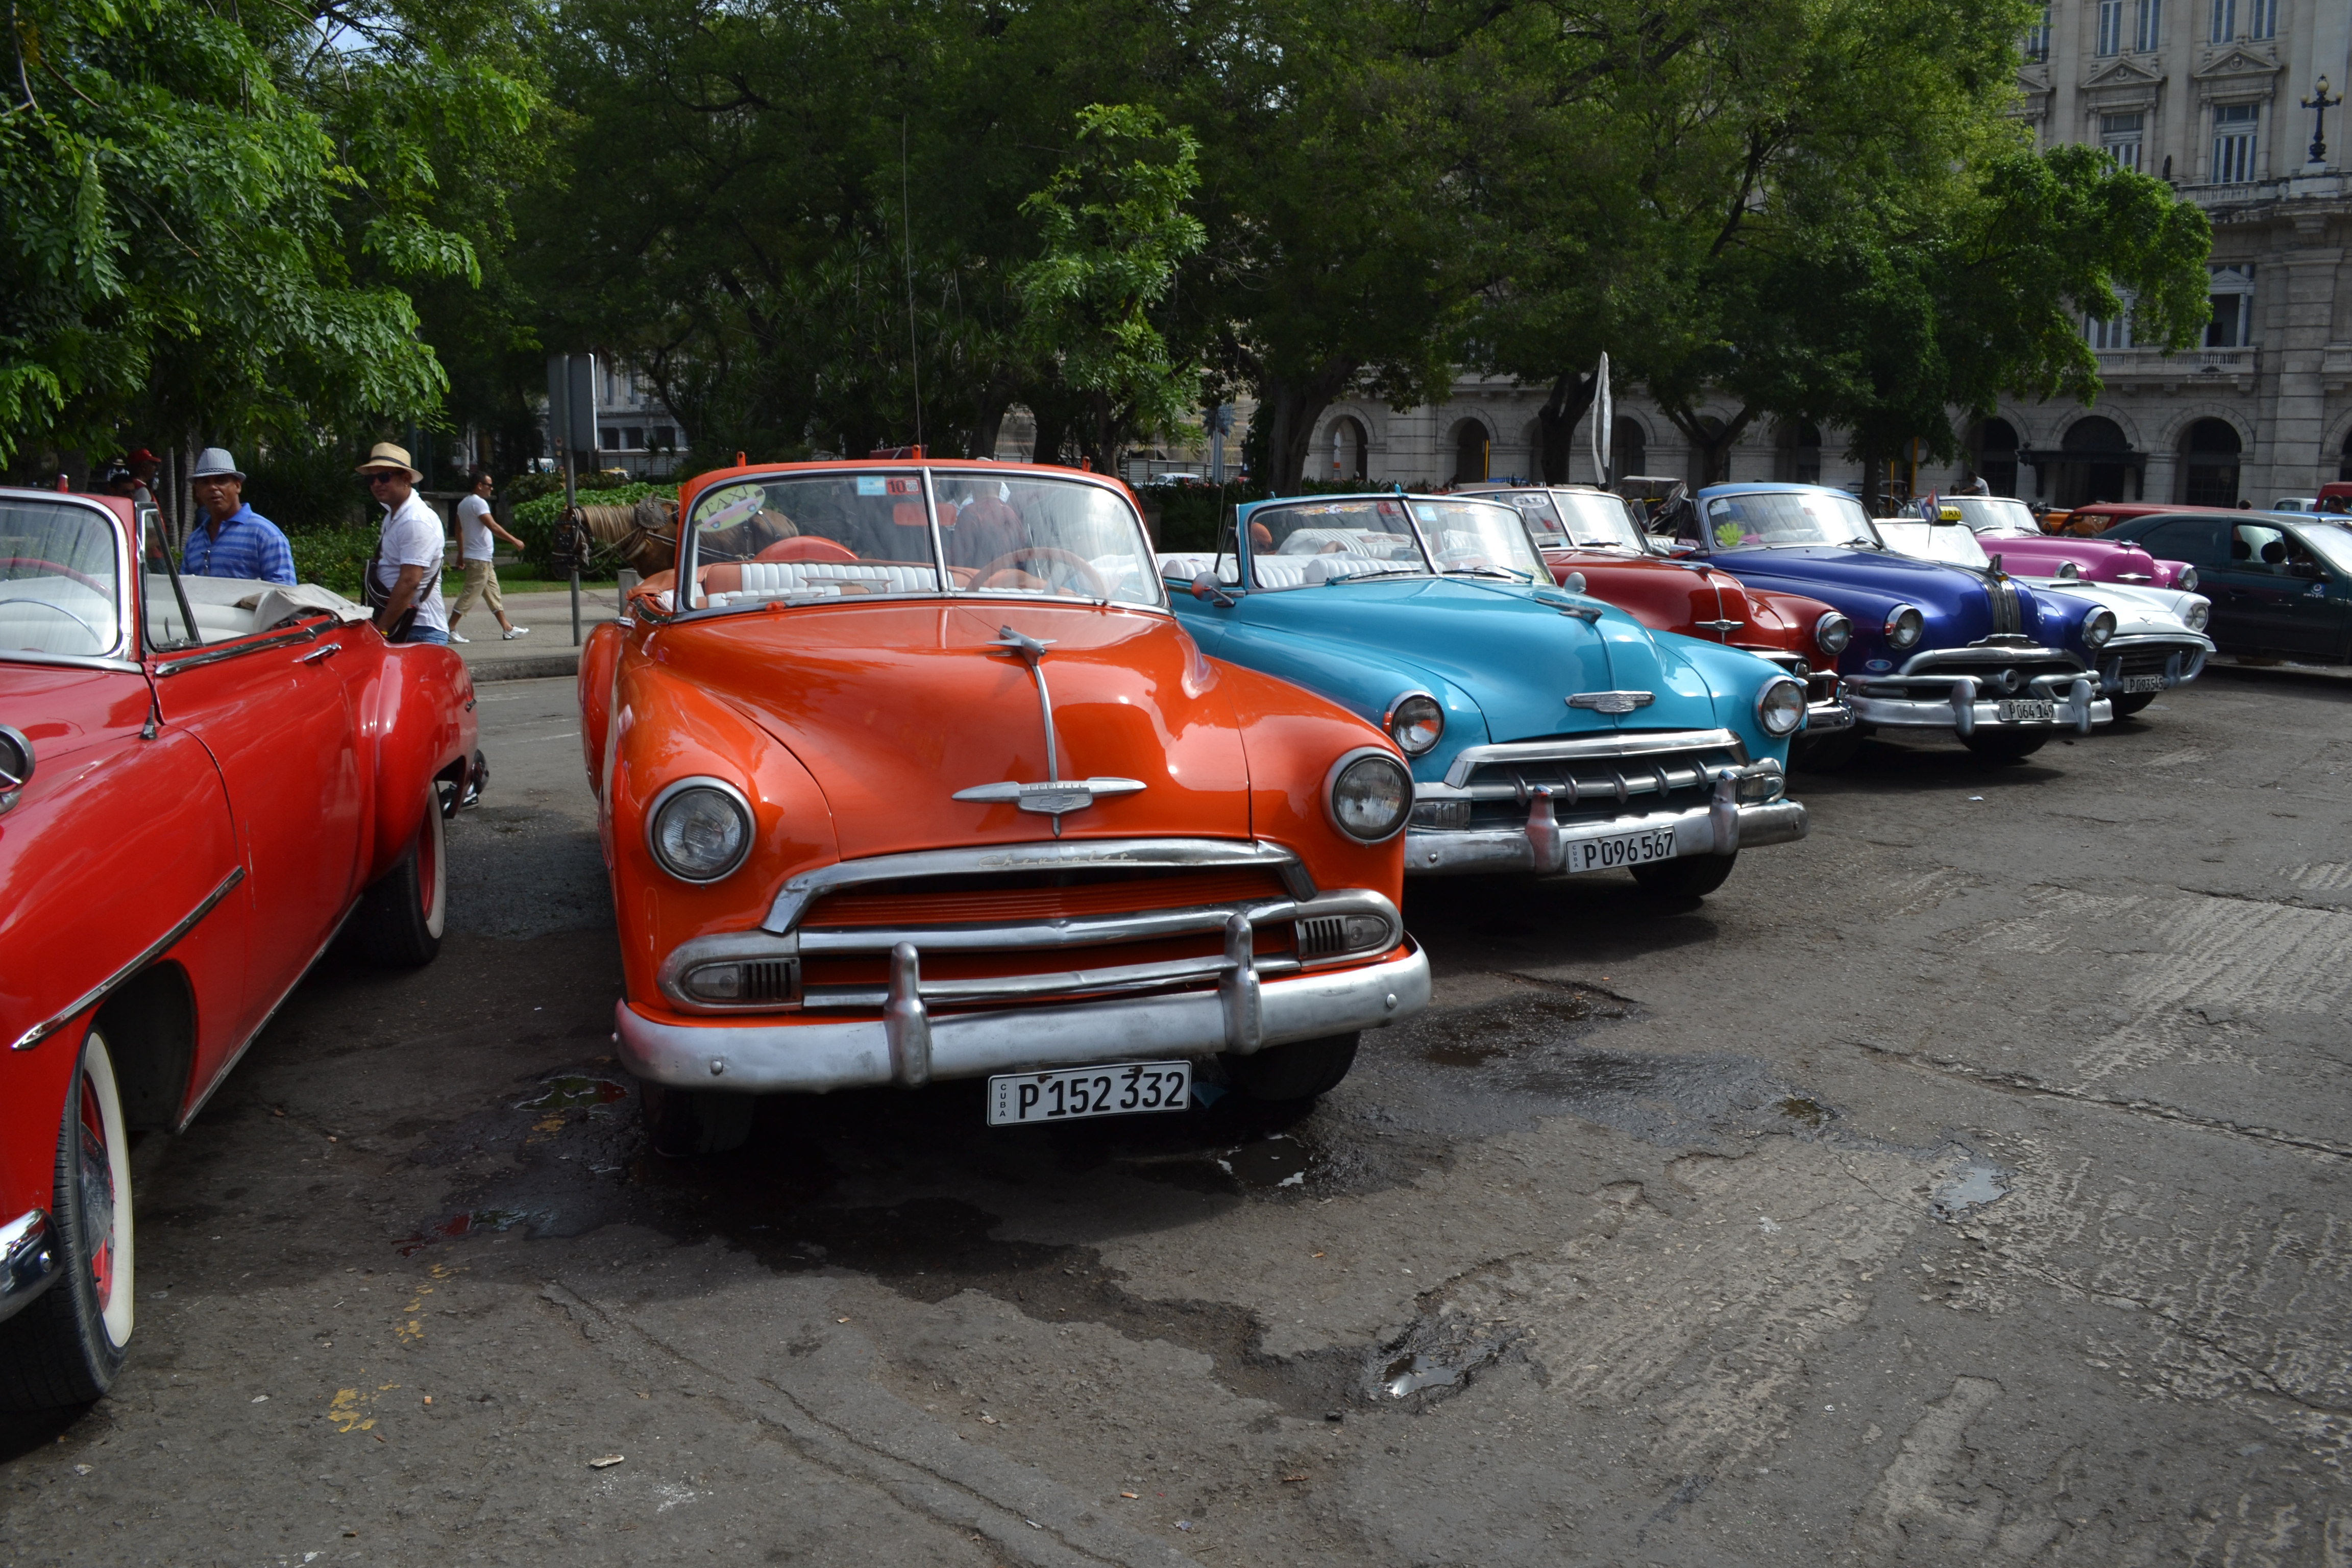 Typical street scene in Havana, Cuba, in Sept. 2014 (Photo by John Cinnamon)